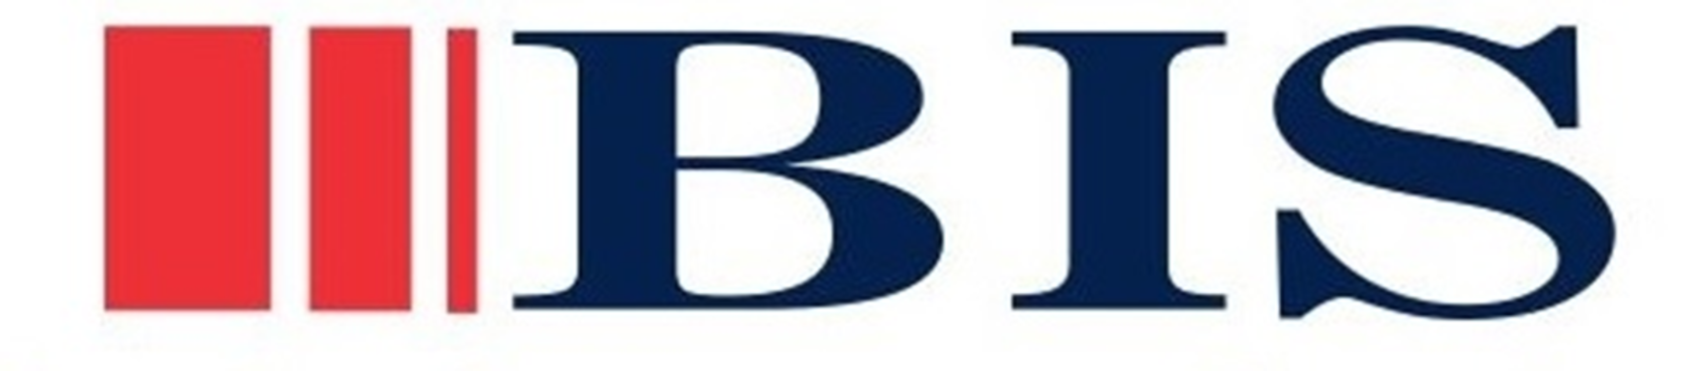 Burba Insurance Services Logo